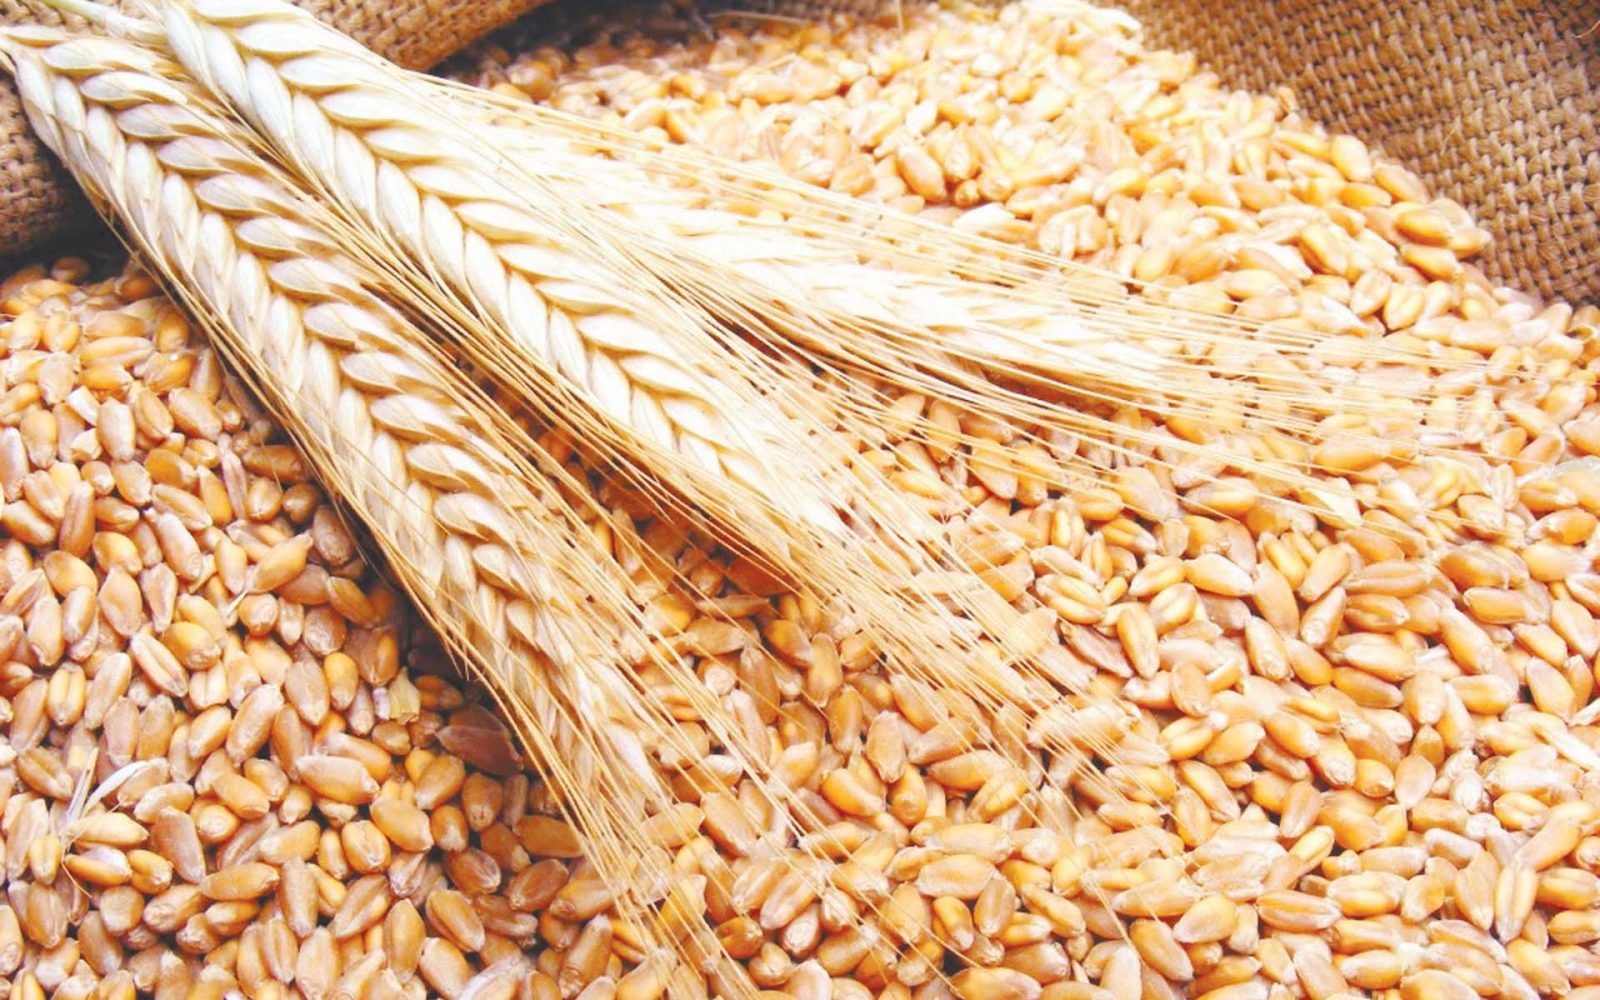 وزارة الزراعة المصرية تتوقع وصول محصول القمح العام الحالي إلى 10 ملايين طن